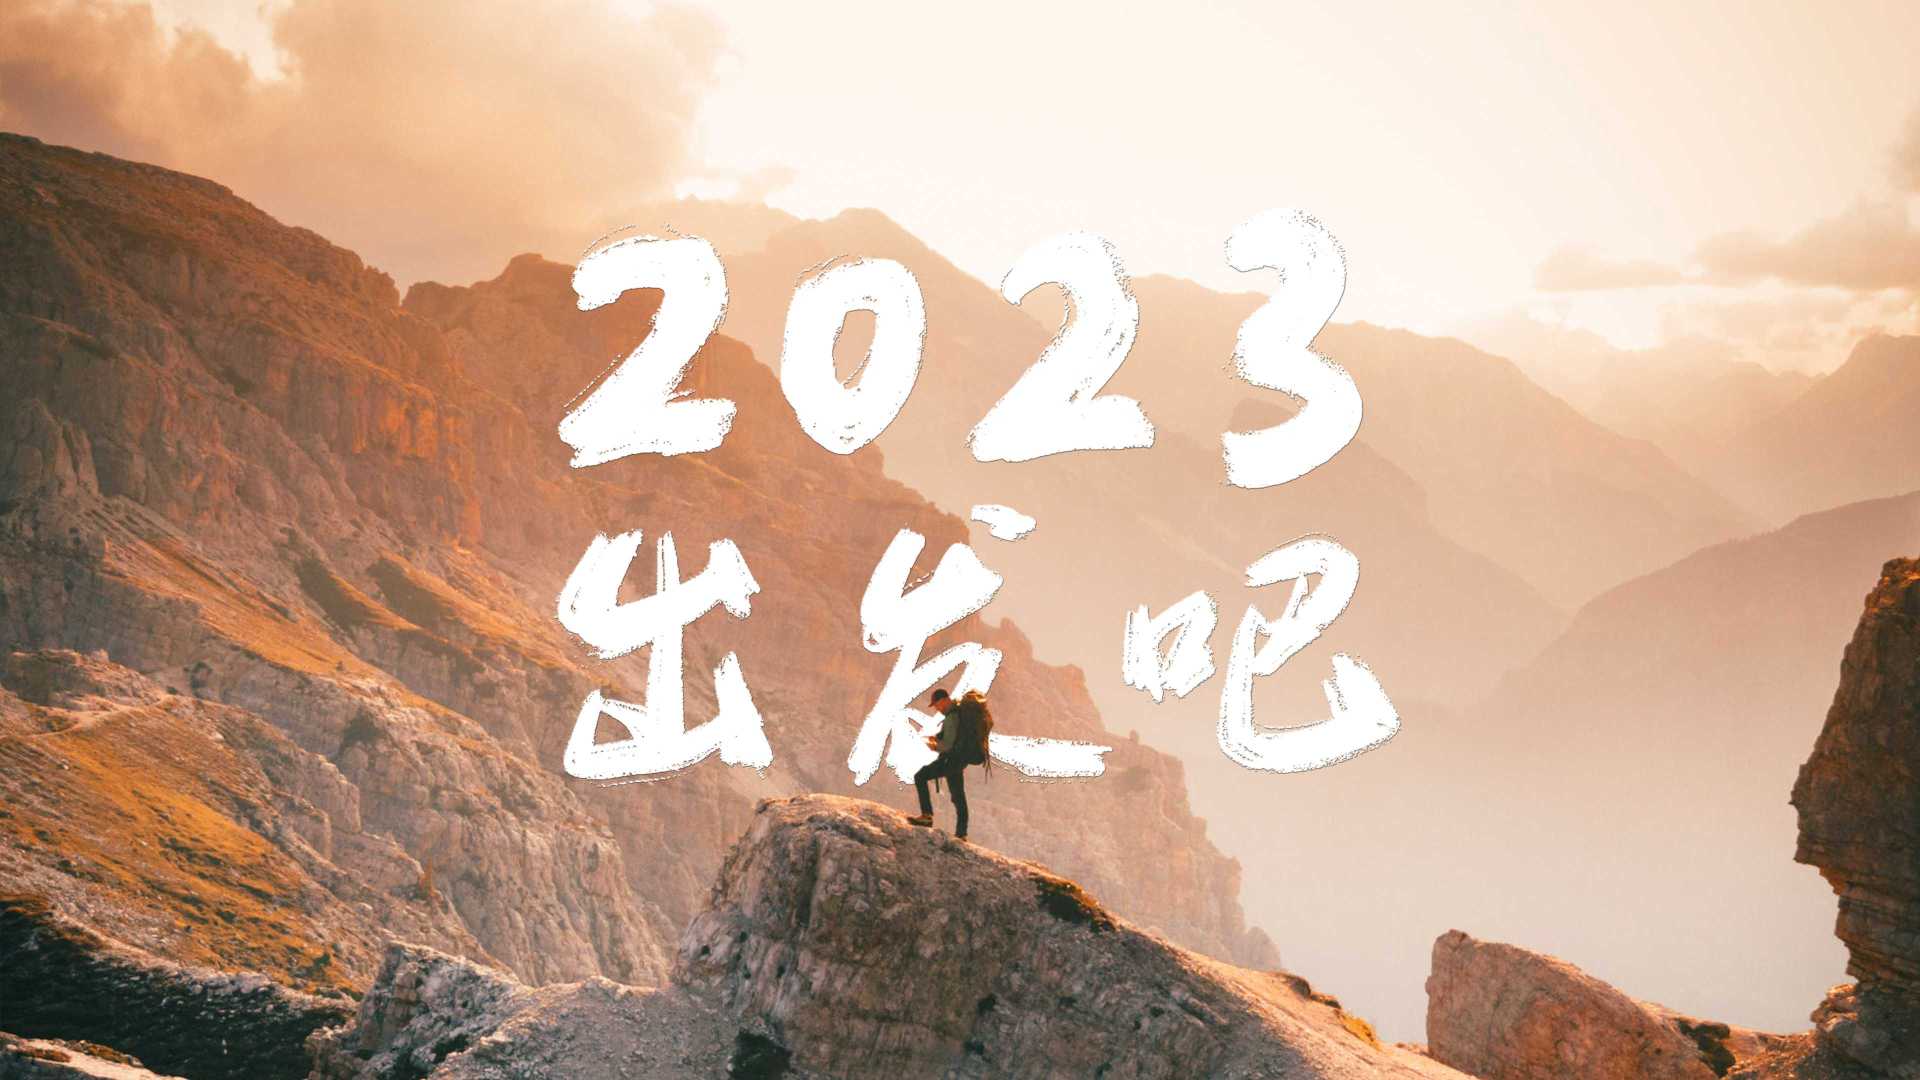 2023 出发吧丨DJI 大疆创新 2022 年度视频